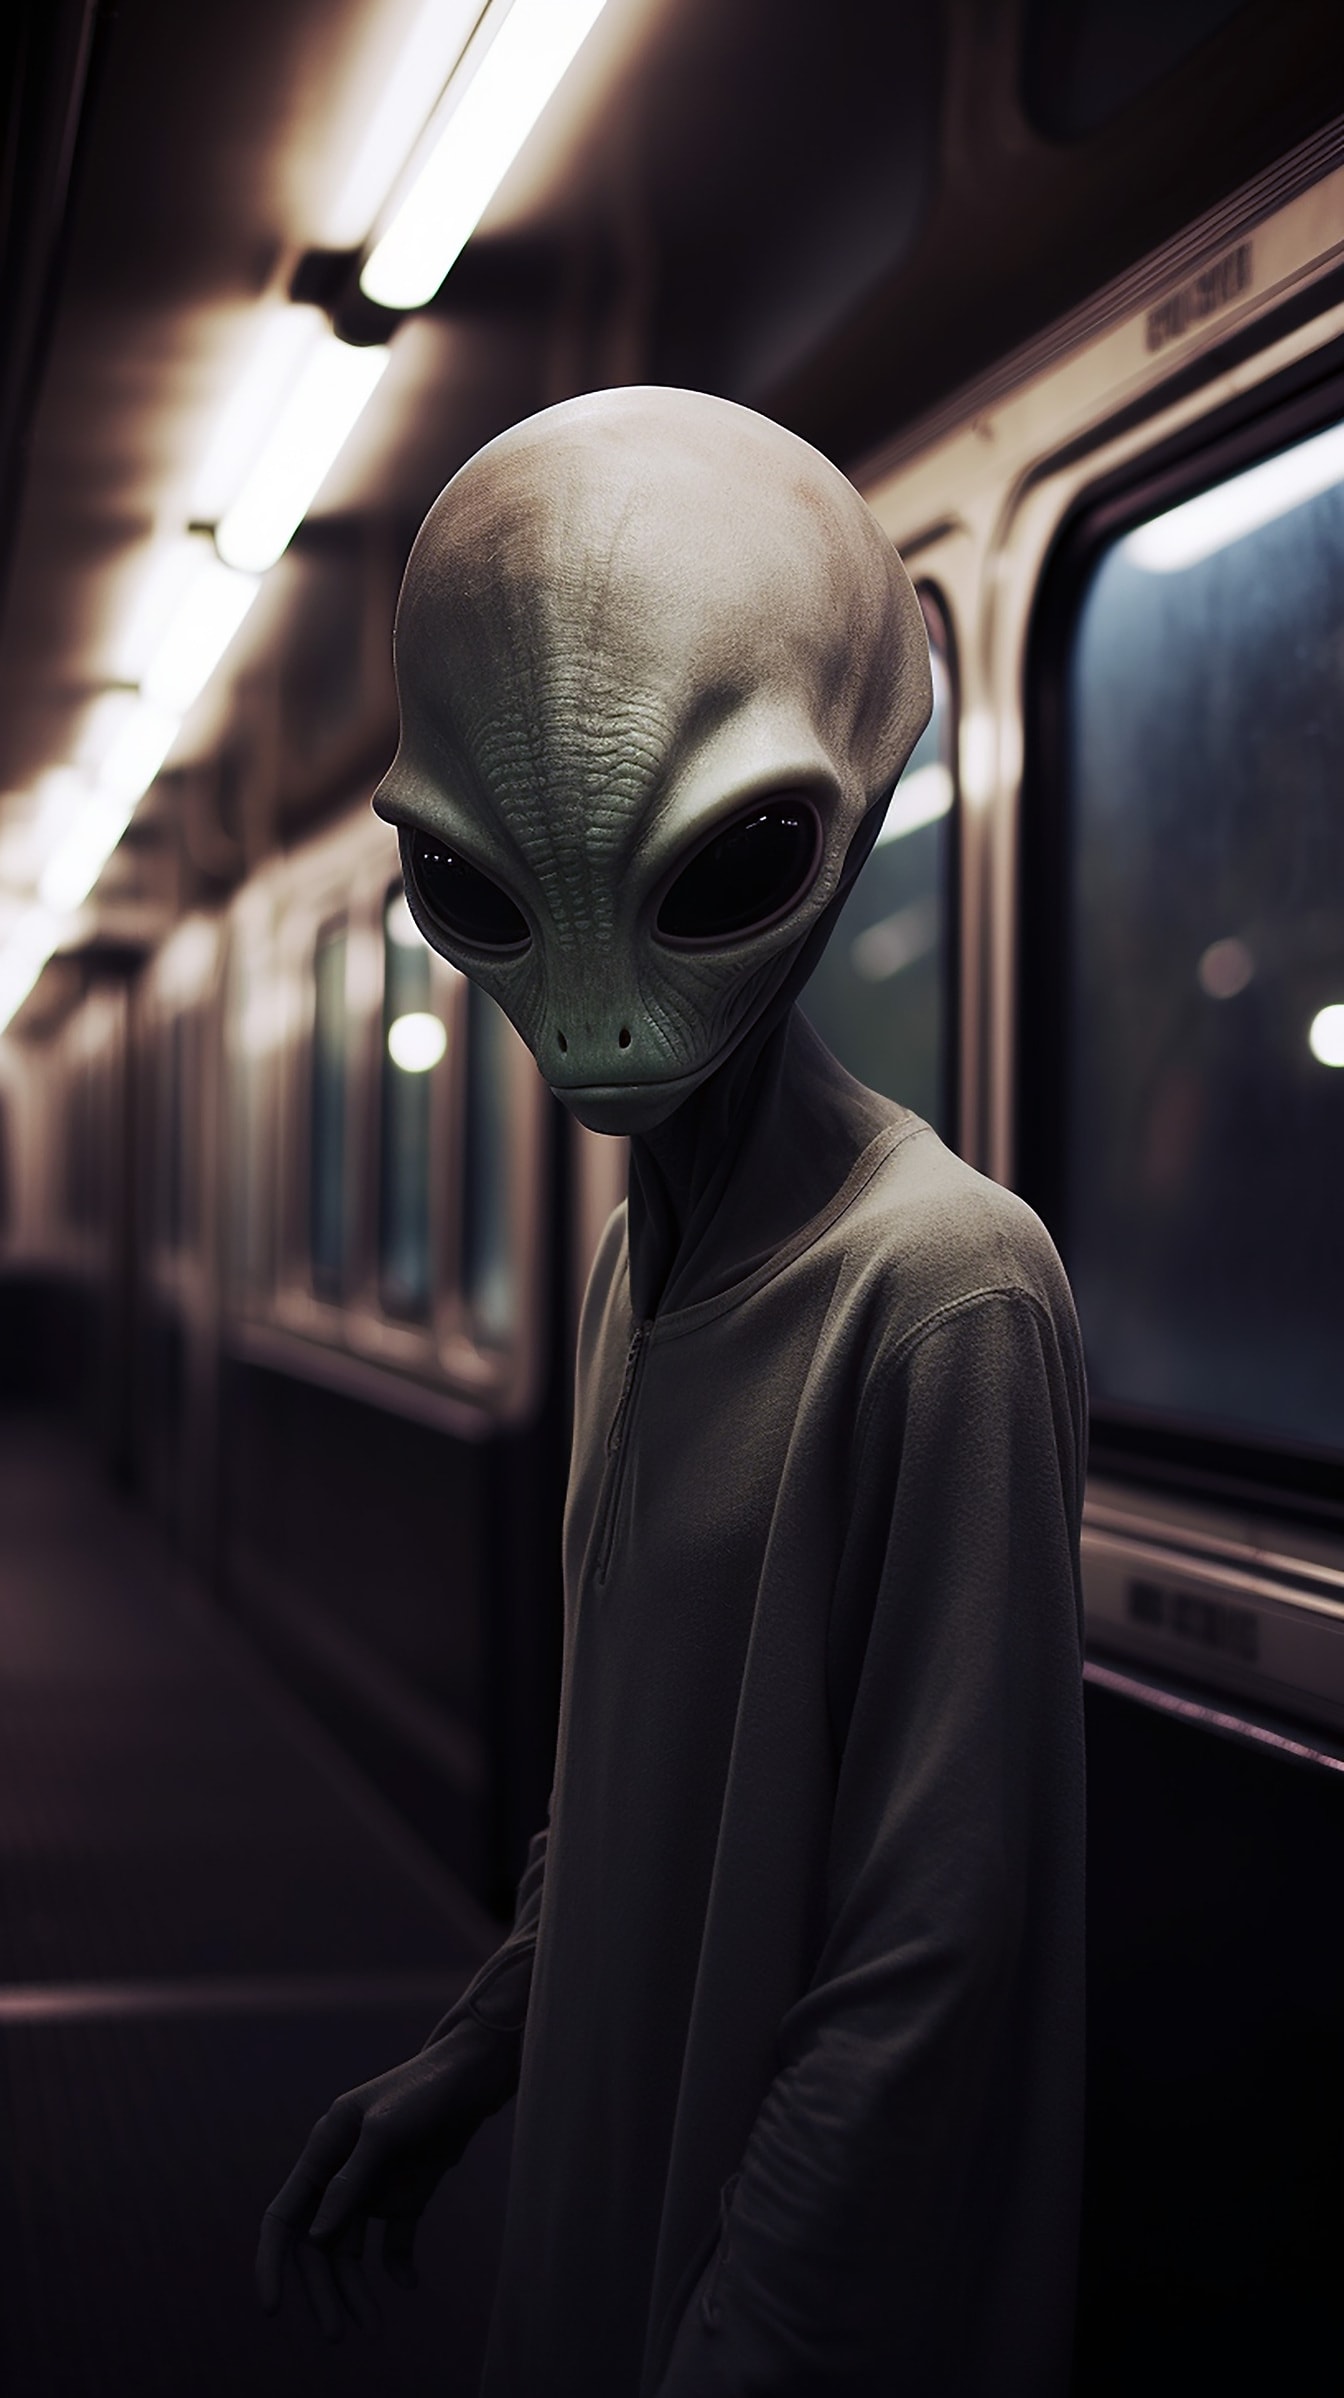 Mimozemské stvorenie s veľkými očami vo vlaku v stanici metra